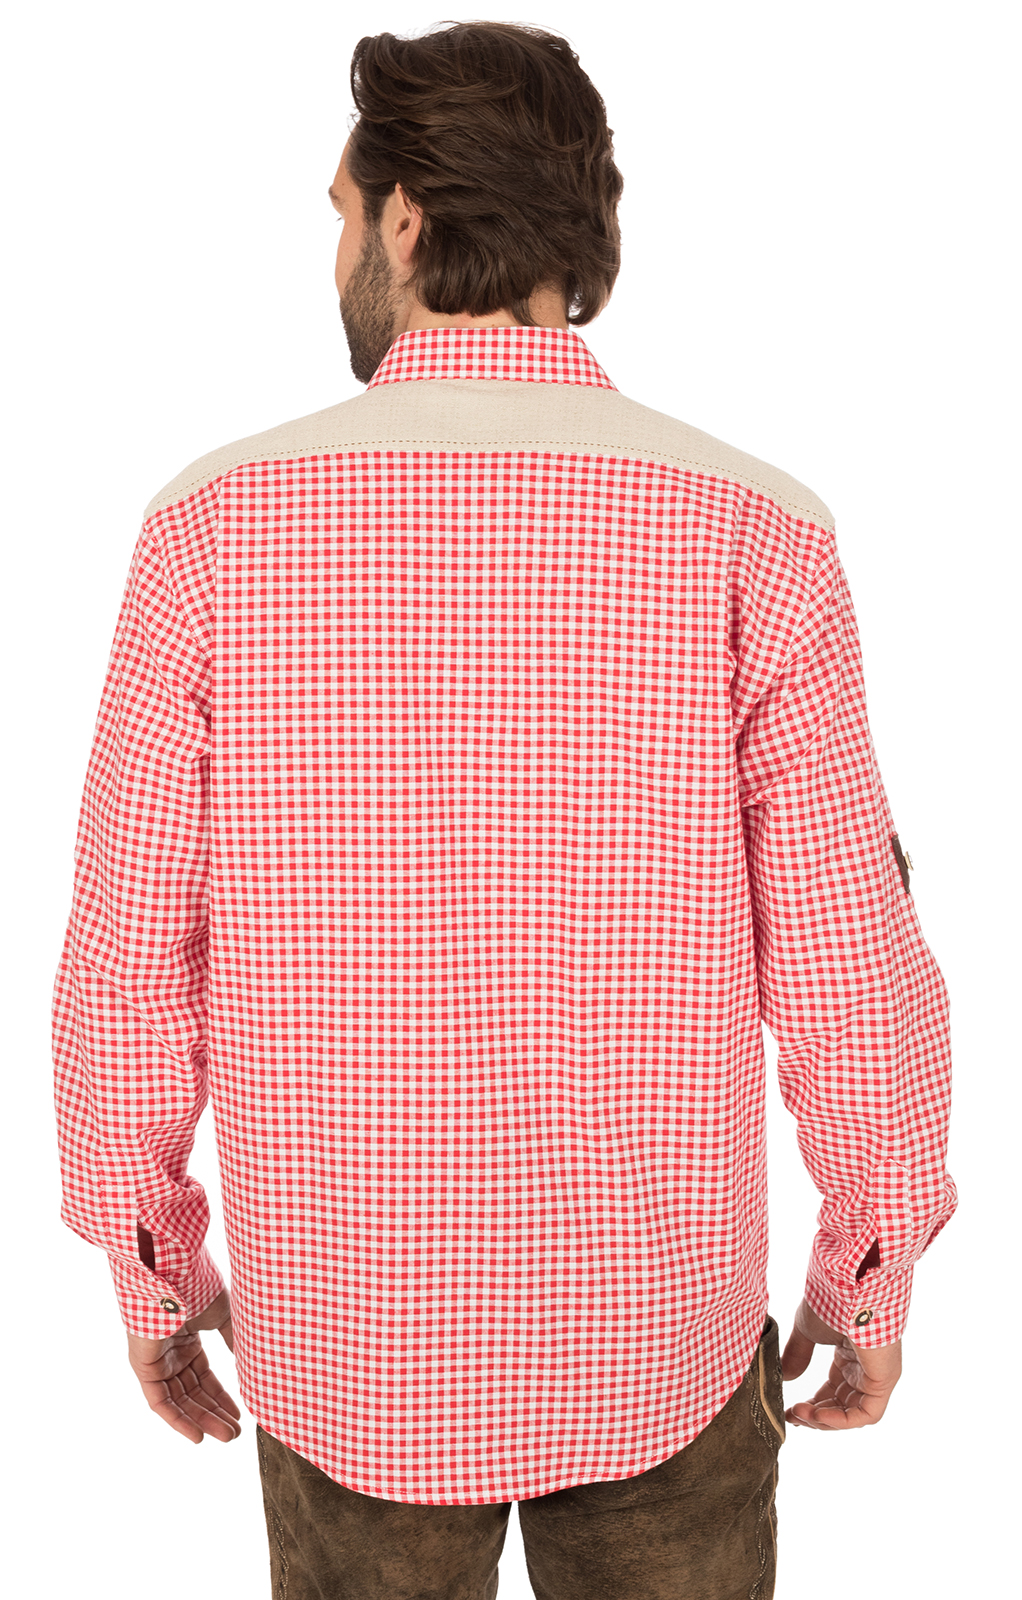 weitere Bilder von Trachtenhemd Krempelarm BELINI Karo weiss rot